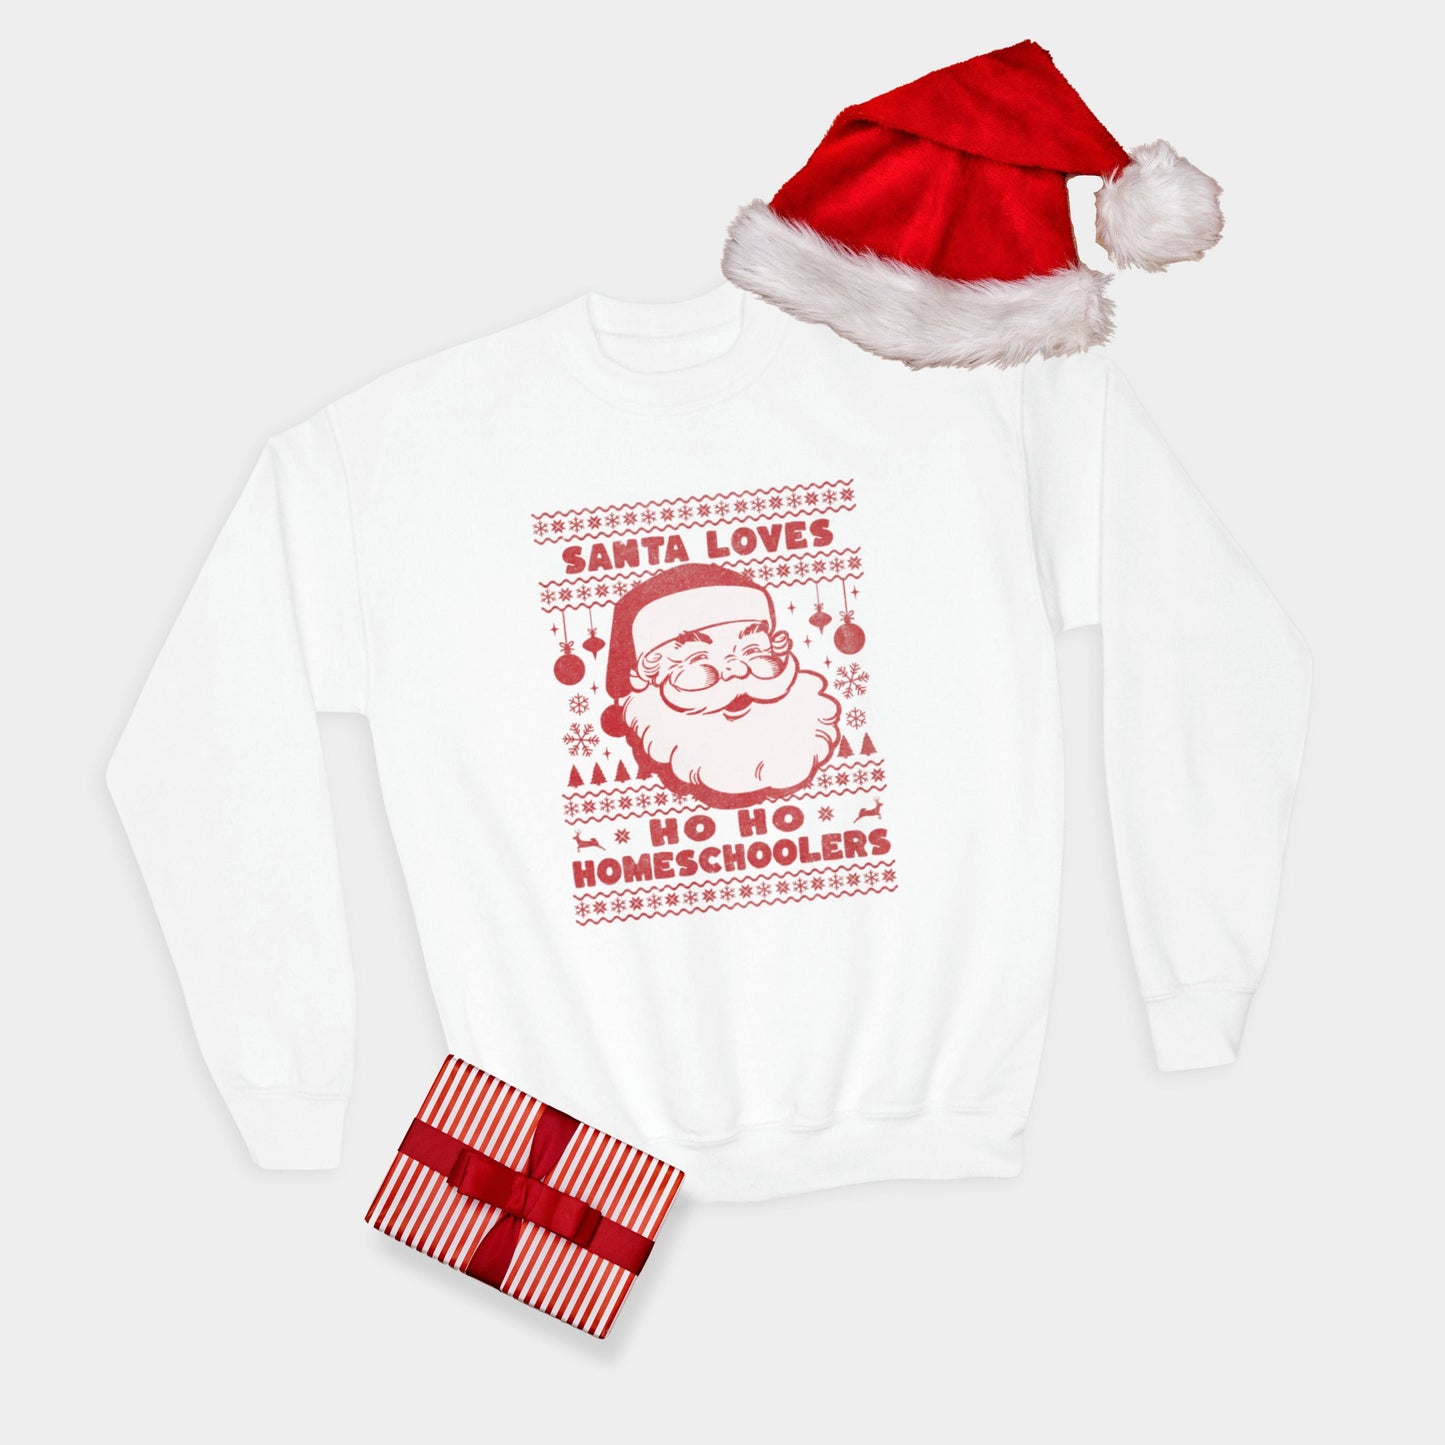 Santa loves Ho Ho Homeschoolers Kids Crewneck Sweatshirt